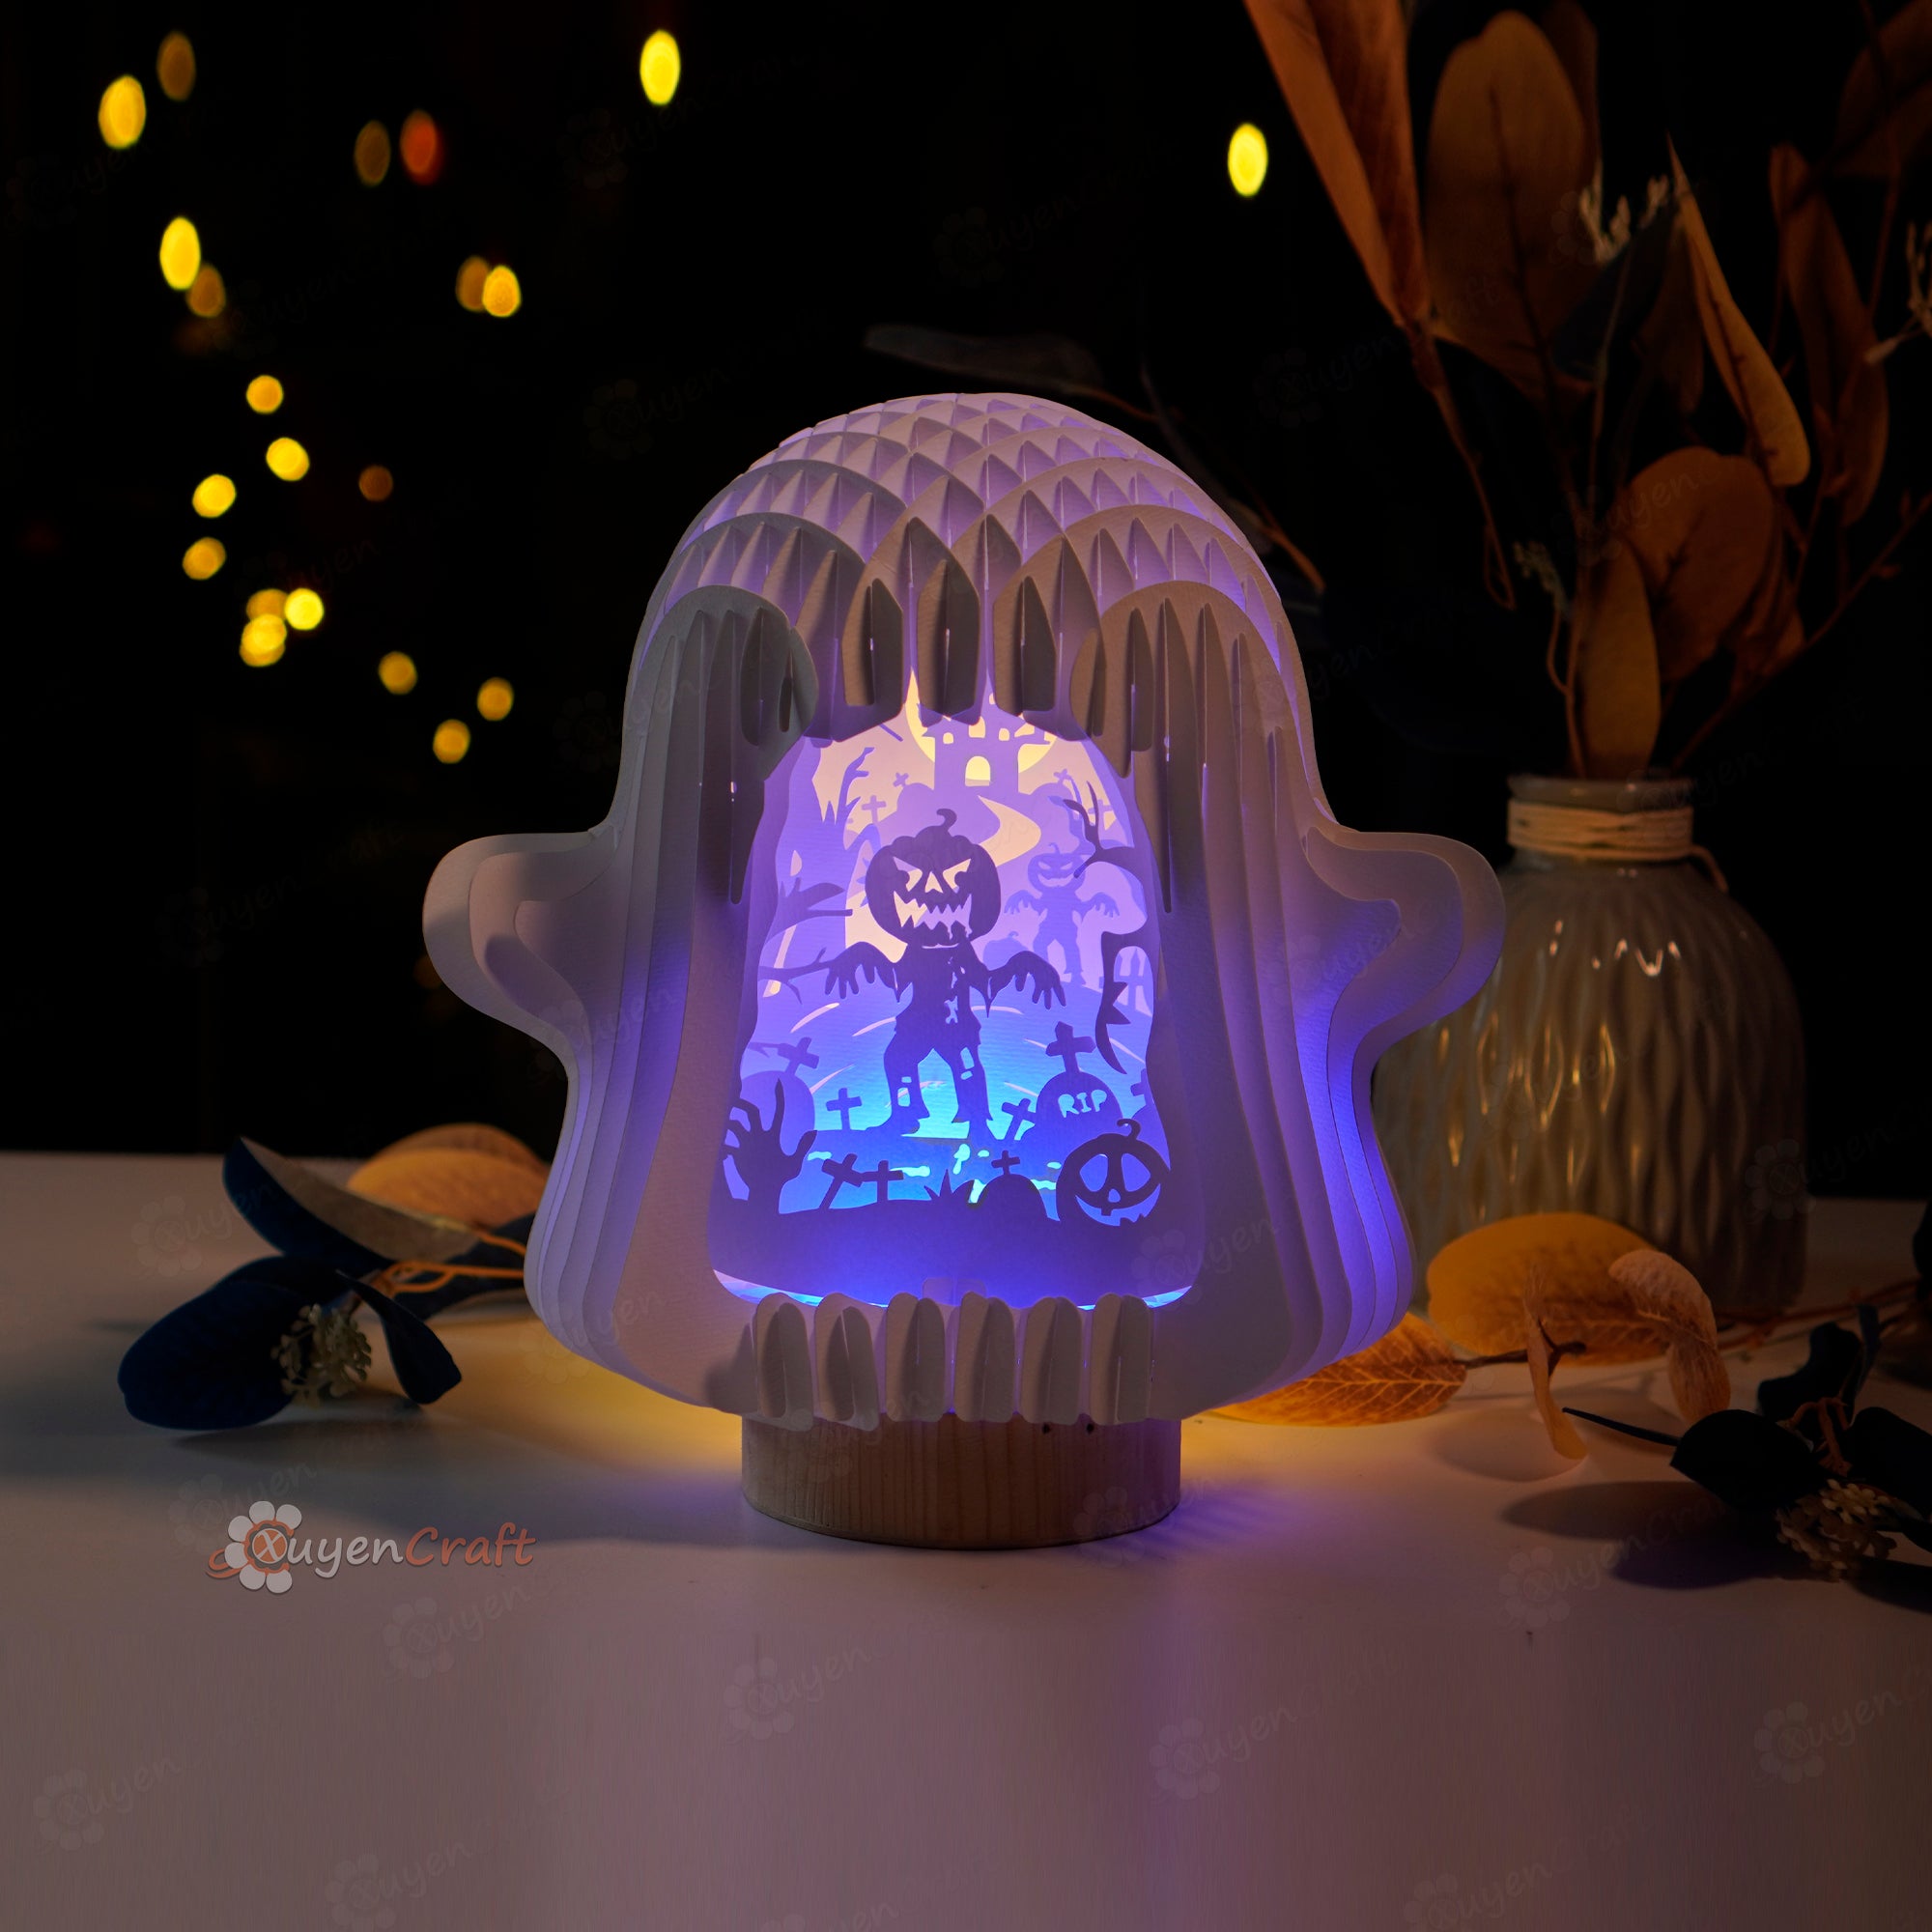 SVG Cricut, Studio Template Zombie Pumpkins Ghost Pop Up Halloween Light Box